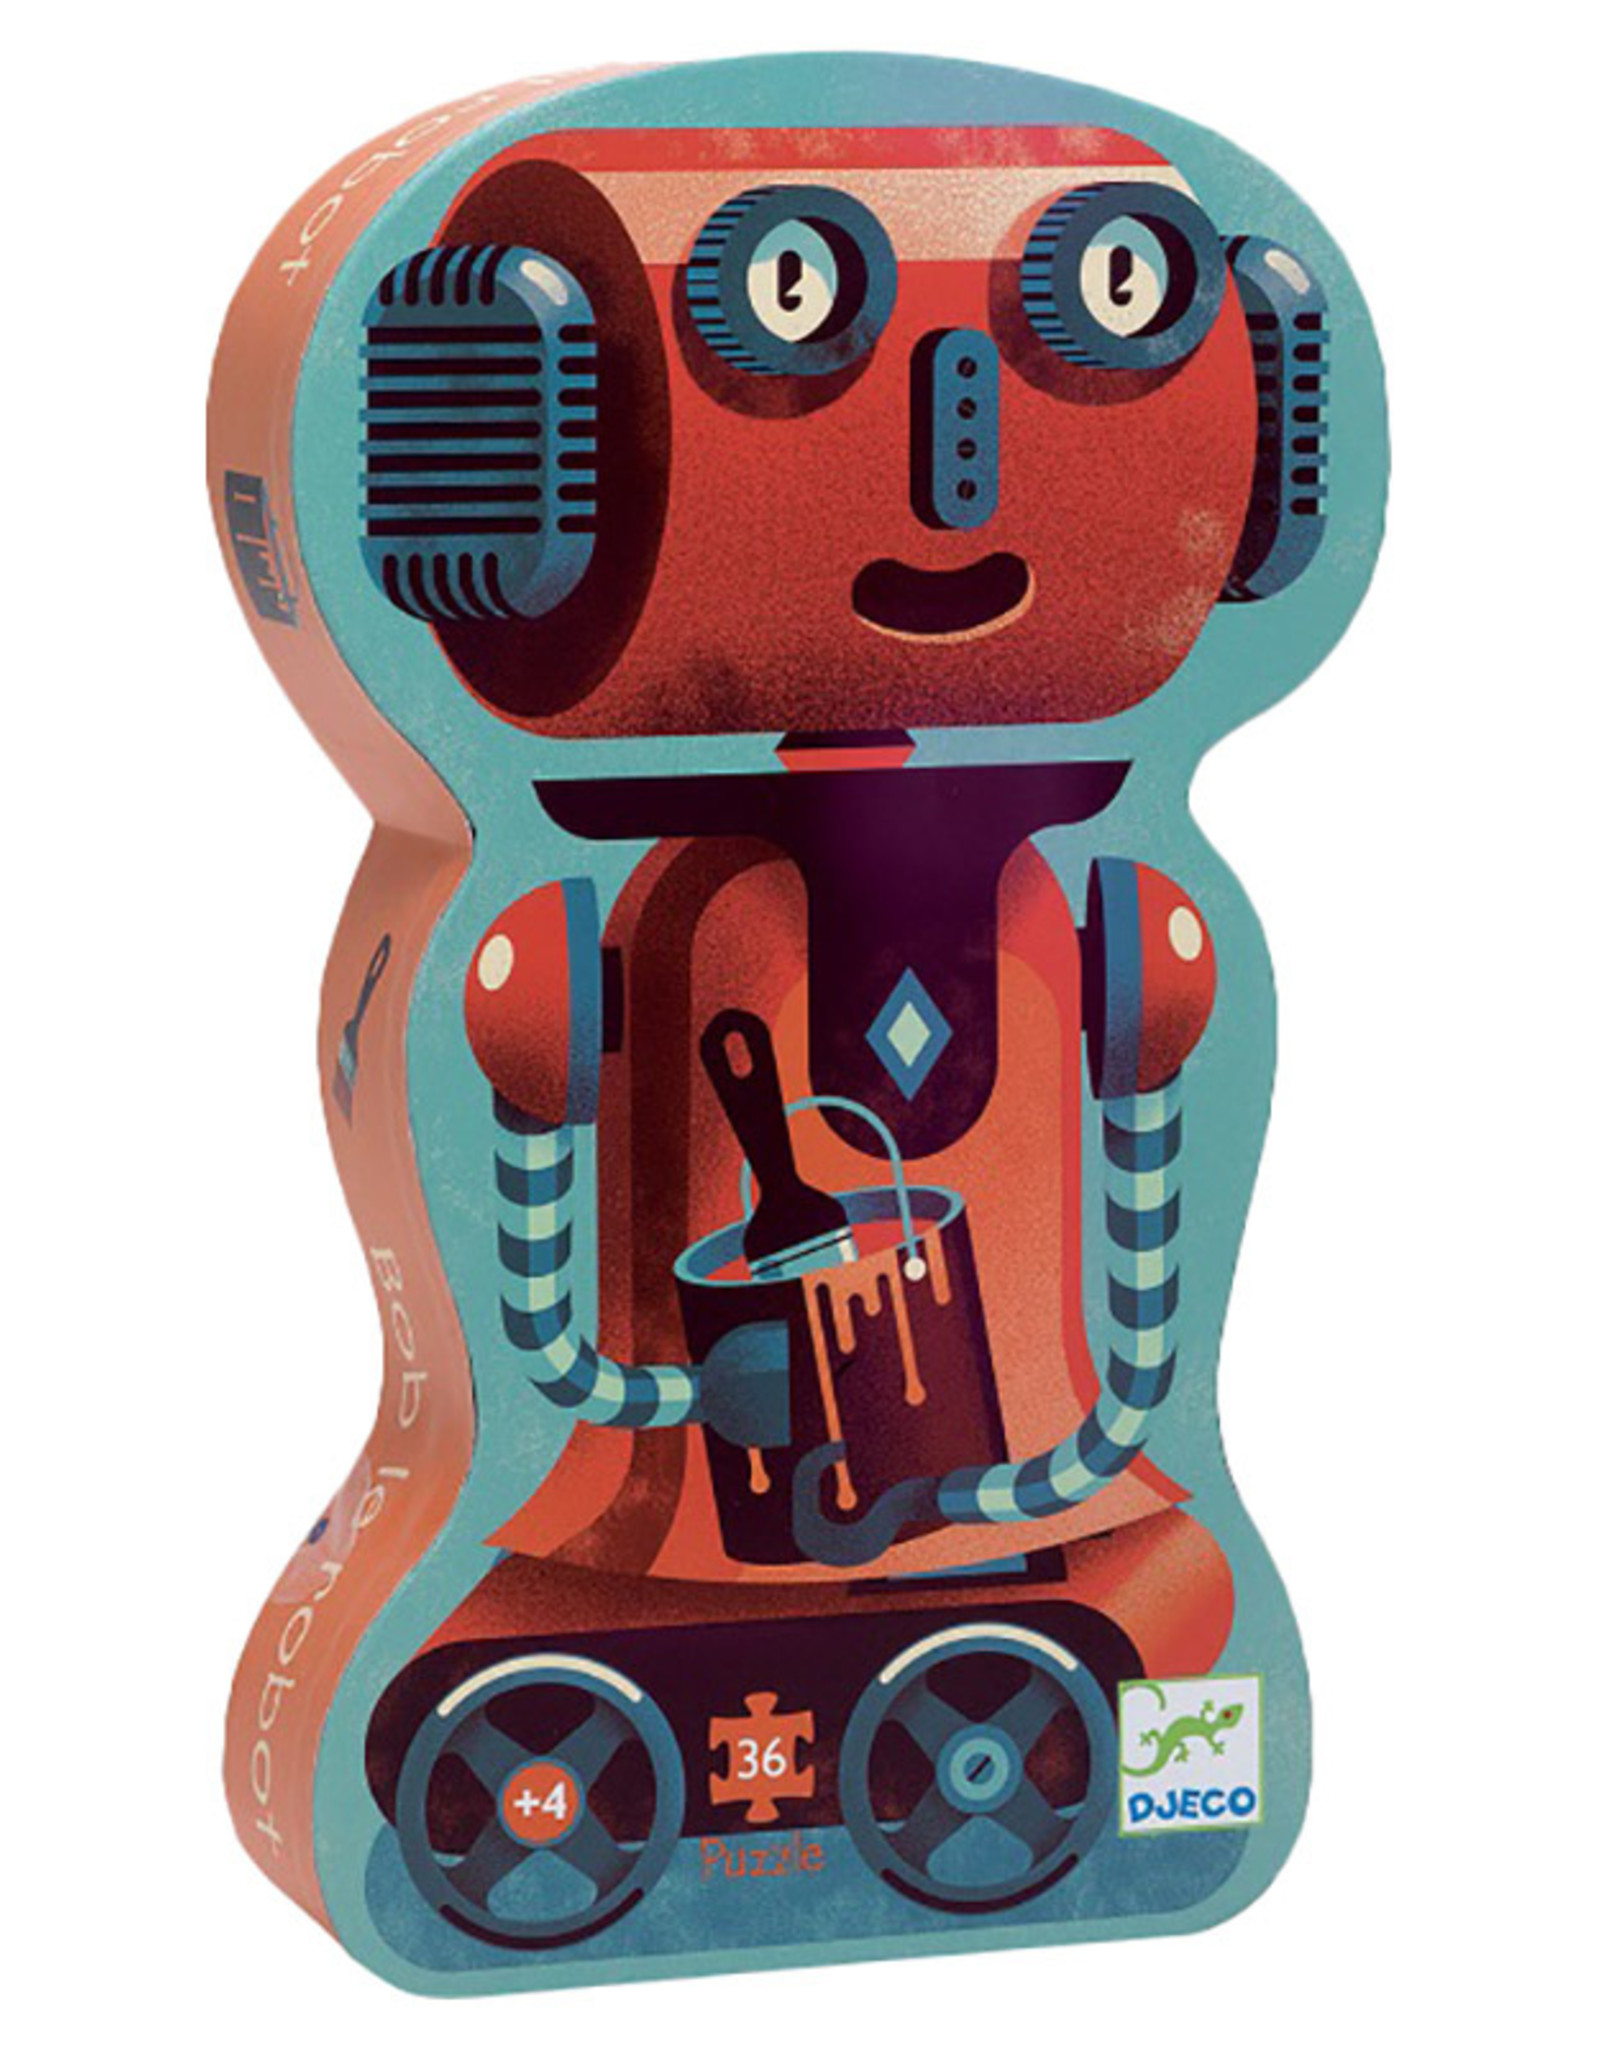 Djeco Silhouette Puzzle - Bob the Robot